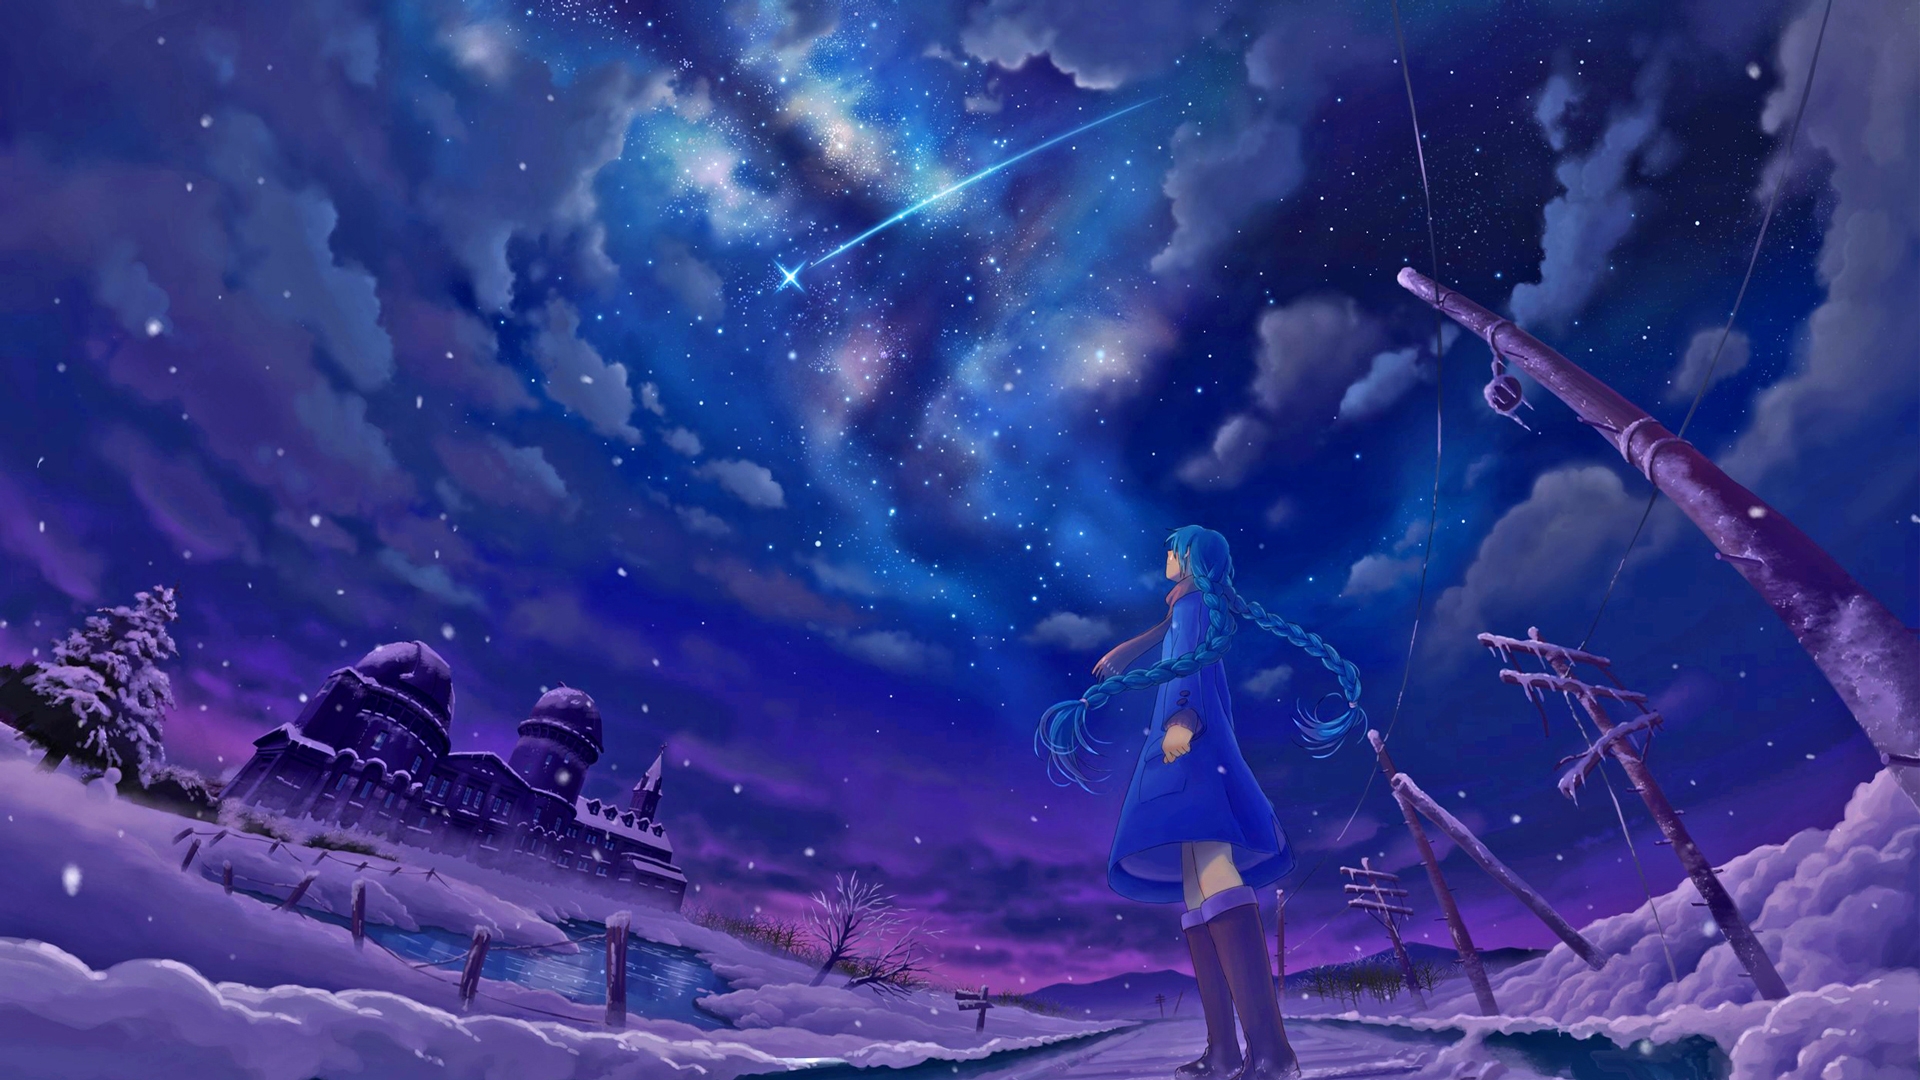 마법의 벽지,하늘,분위기,보라색,우주,cg 삽화